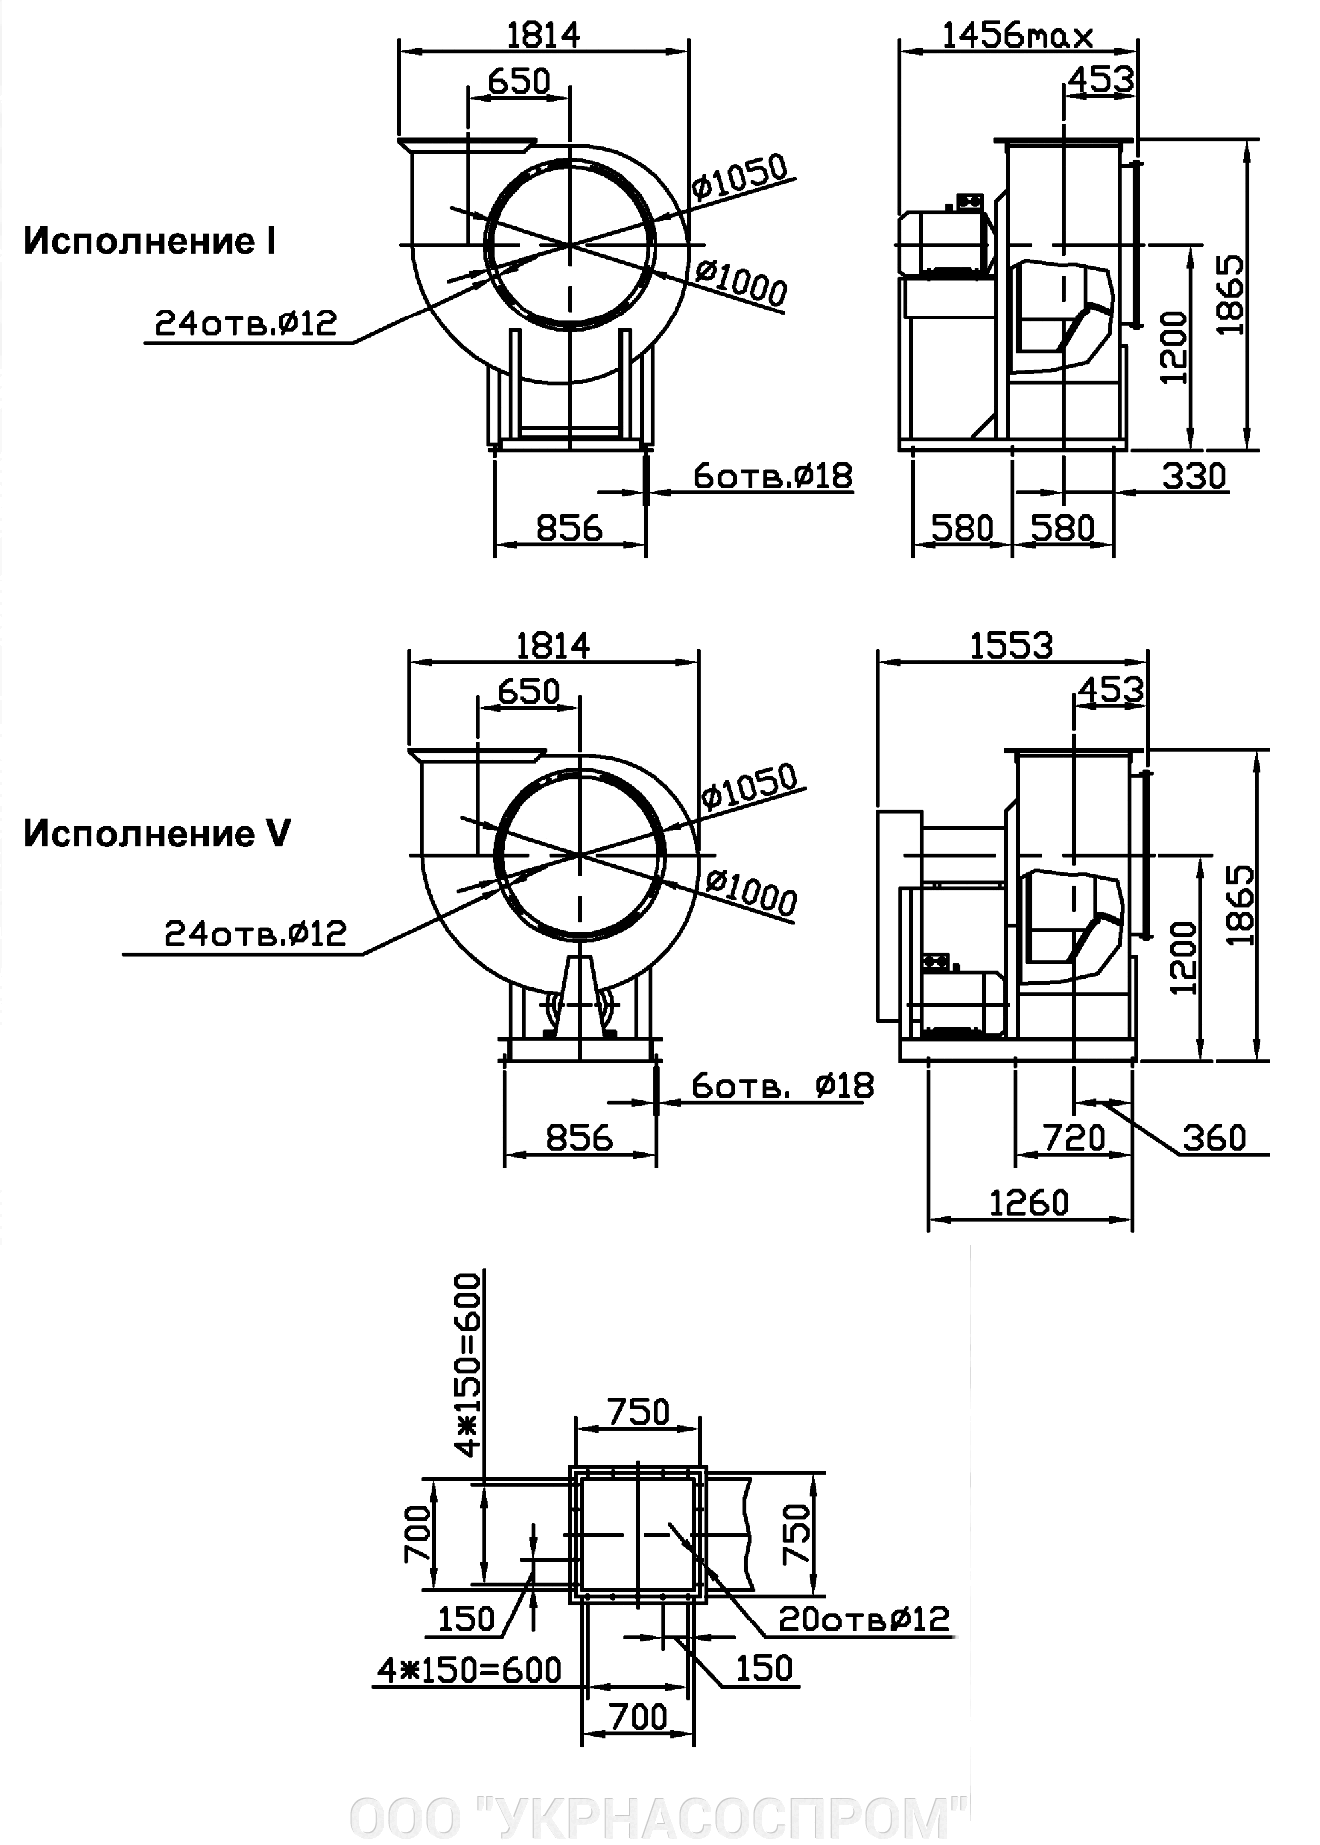 Вентилятор ВЦ 4-75 №10 30 кВт 1000 об/мин